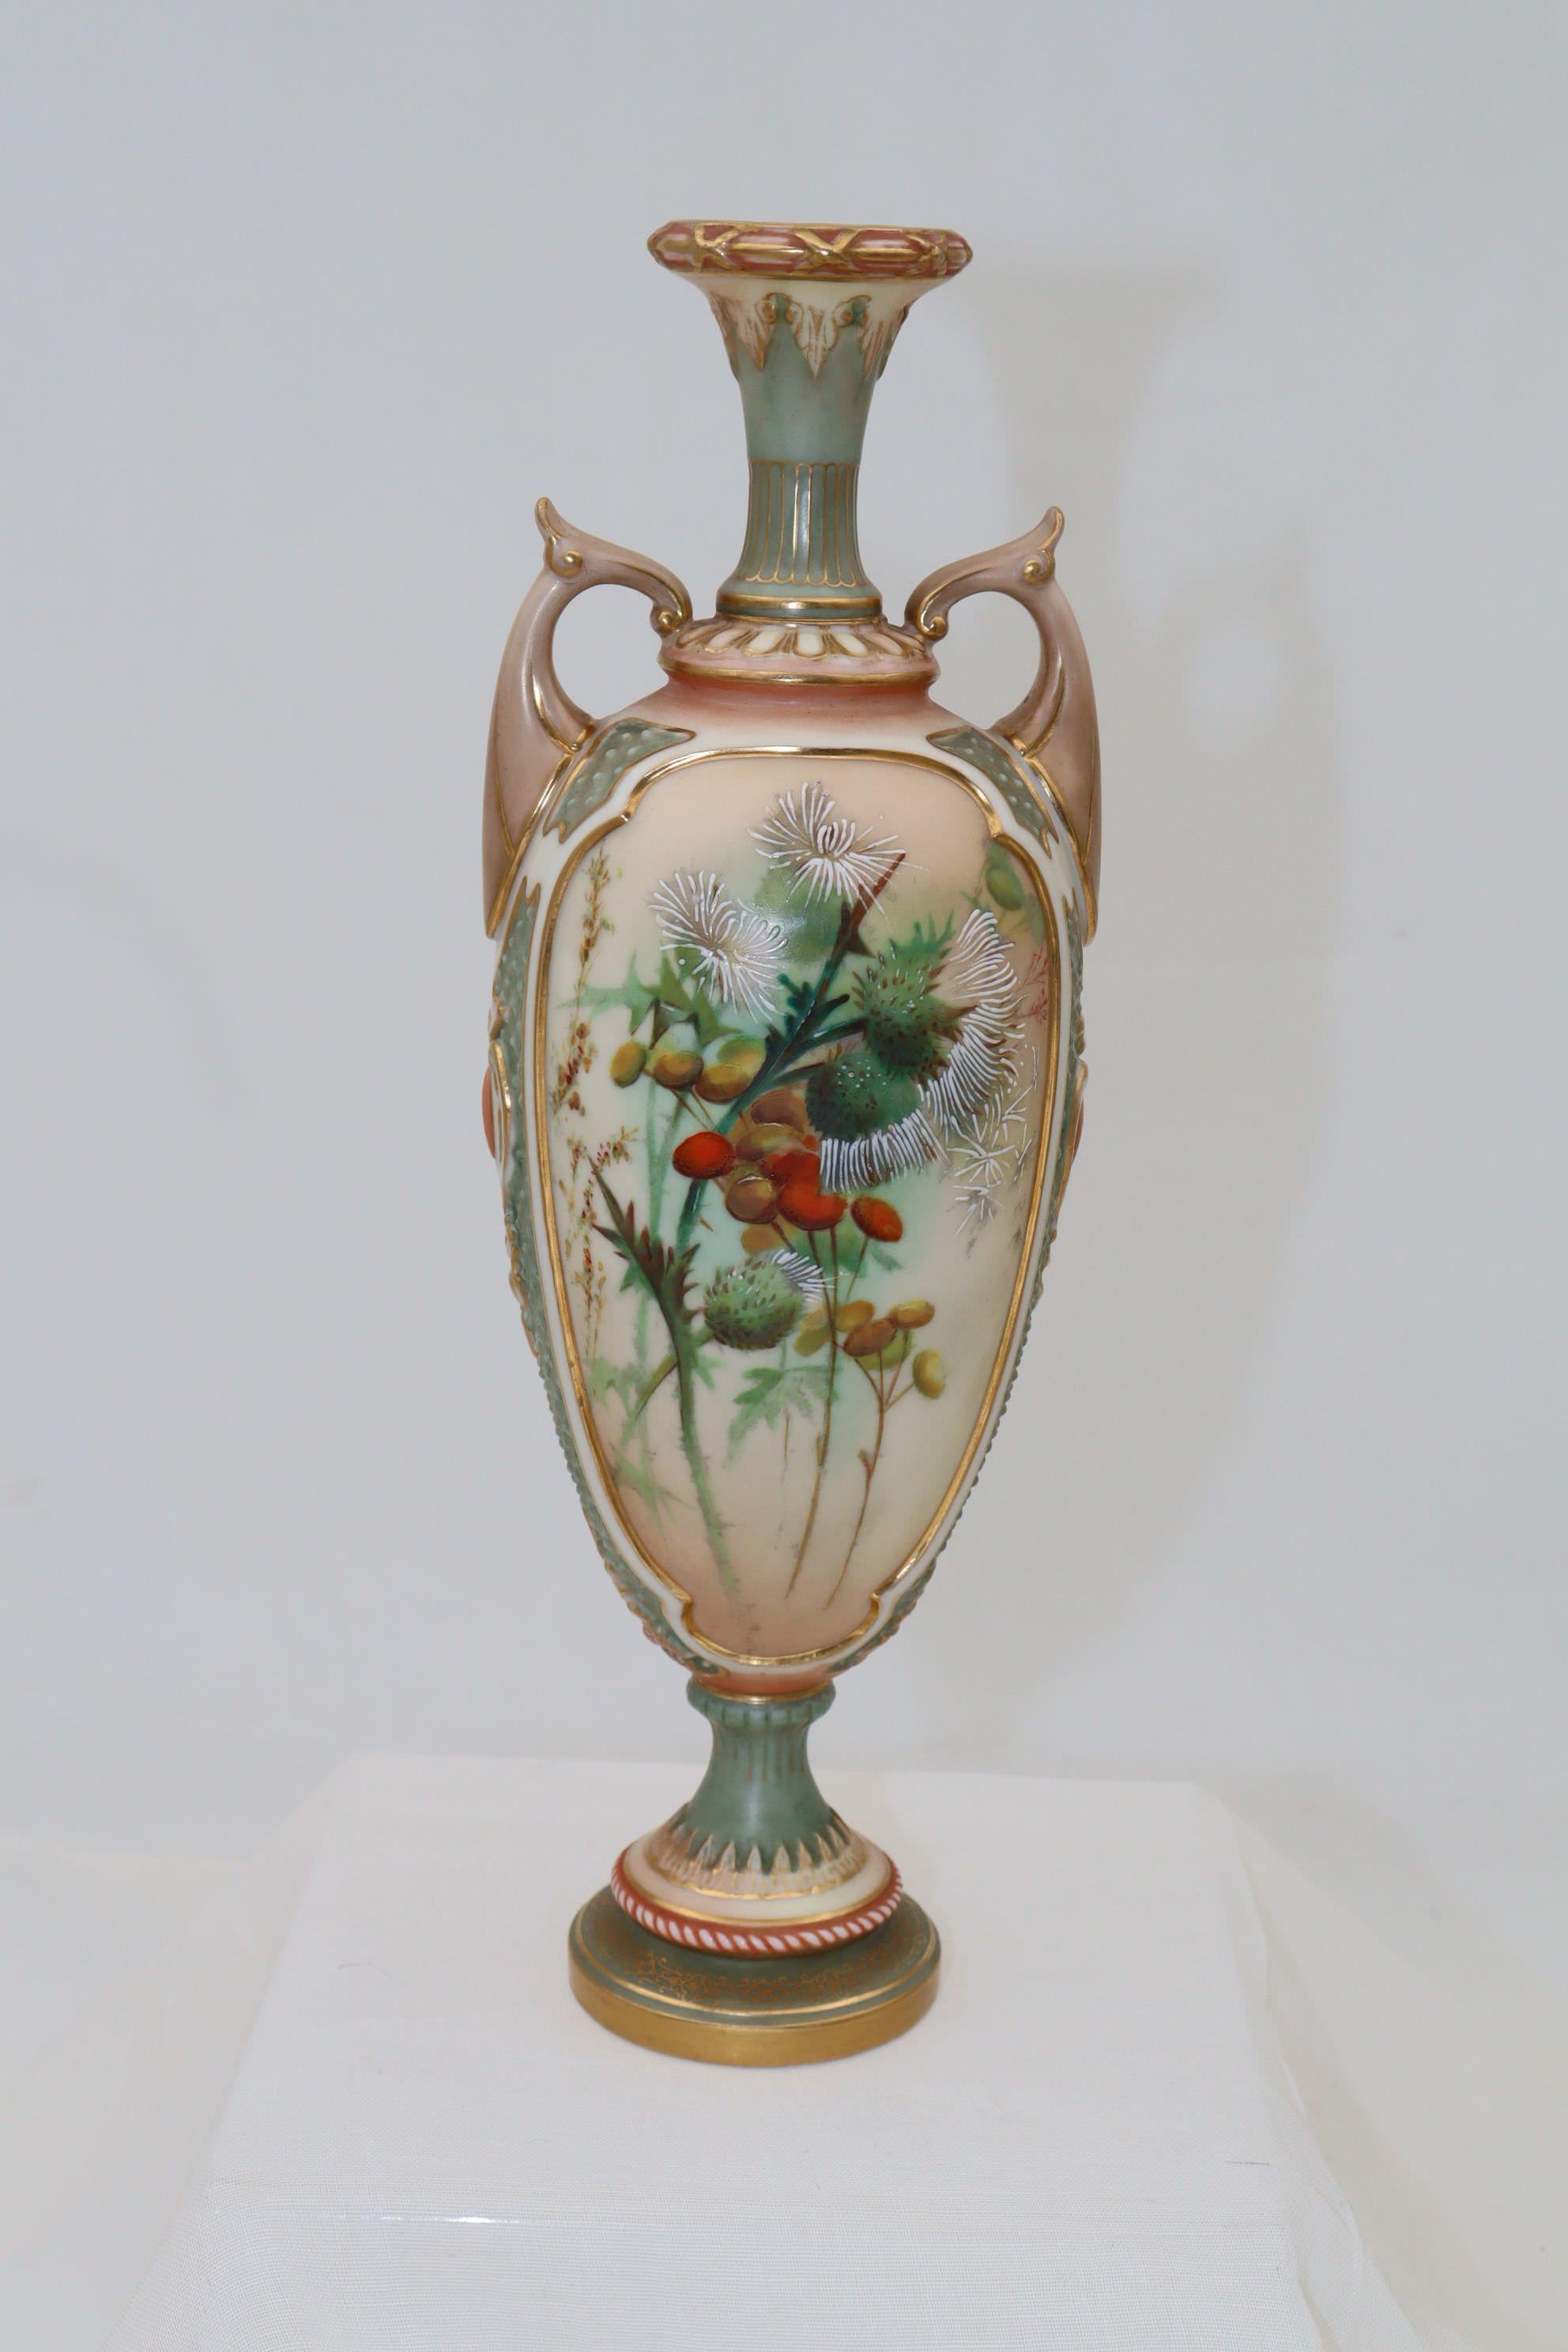 Die Vorderseite dieser Porzellanvase von Royal Worcester zeigt eine handgemalte Distel und andere Blumen im Stil von Edward Raby junior. Raby (geb. 1863) war von etwa 1875 bis 1896 am Royal Worcester tätig und war einer der wichtigsten Maler. Auf